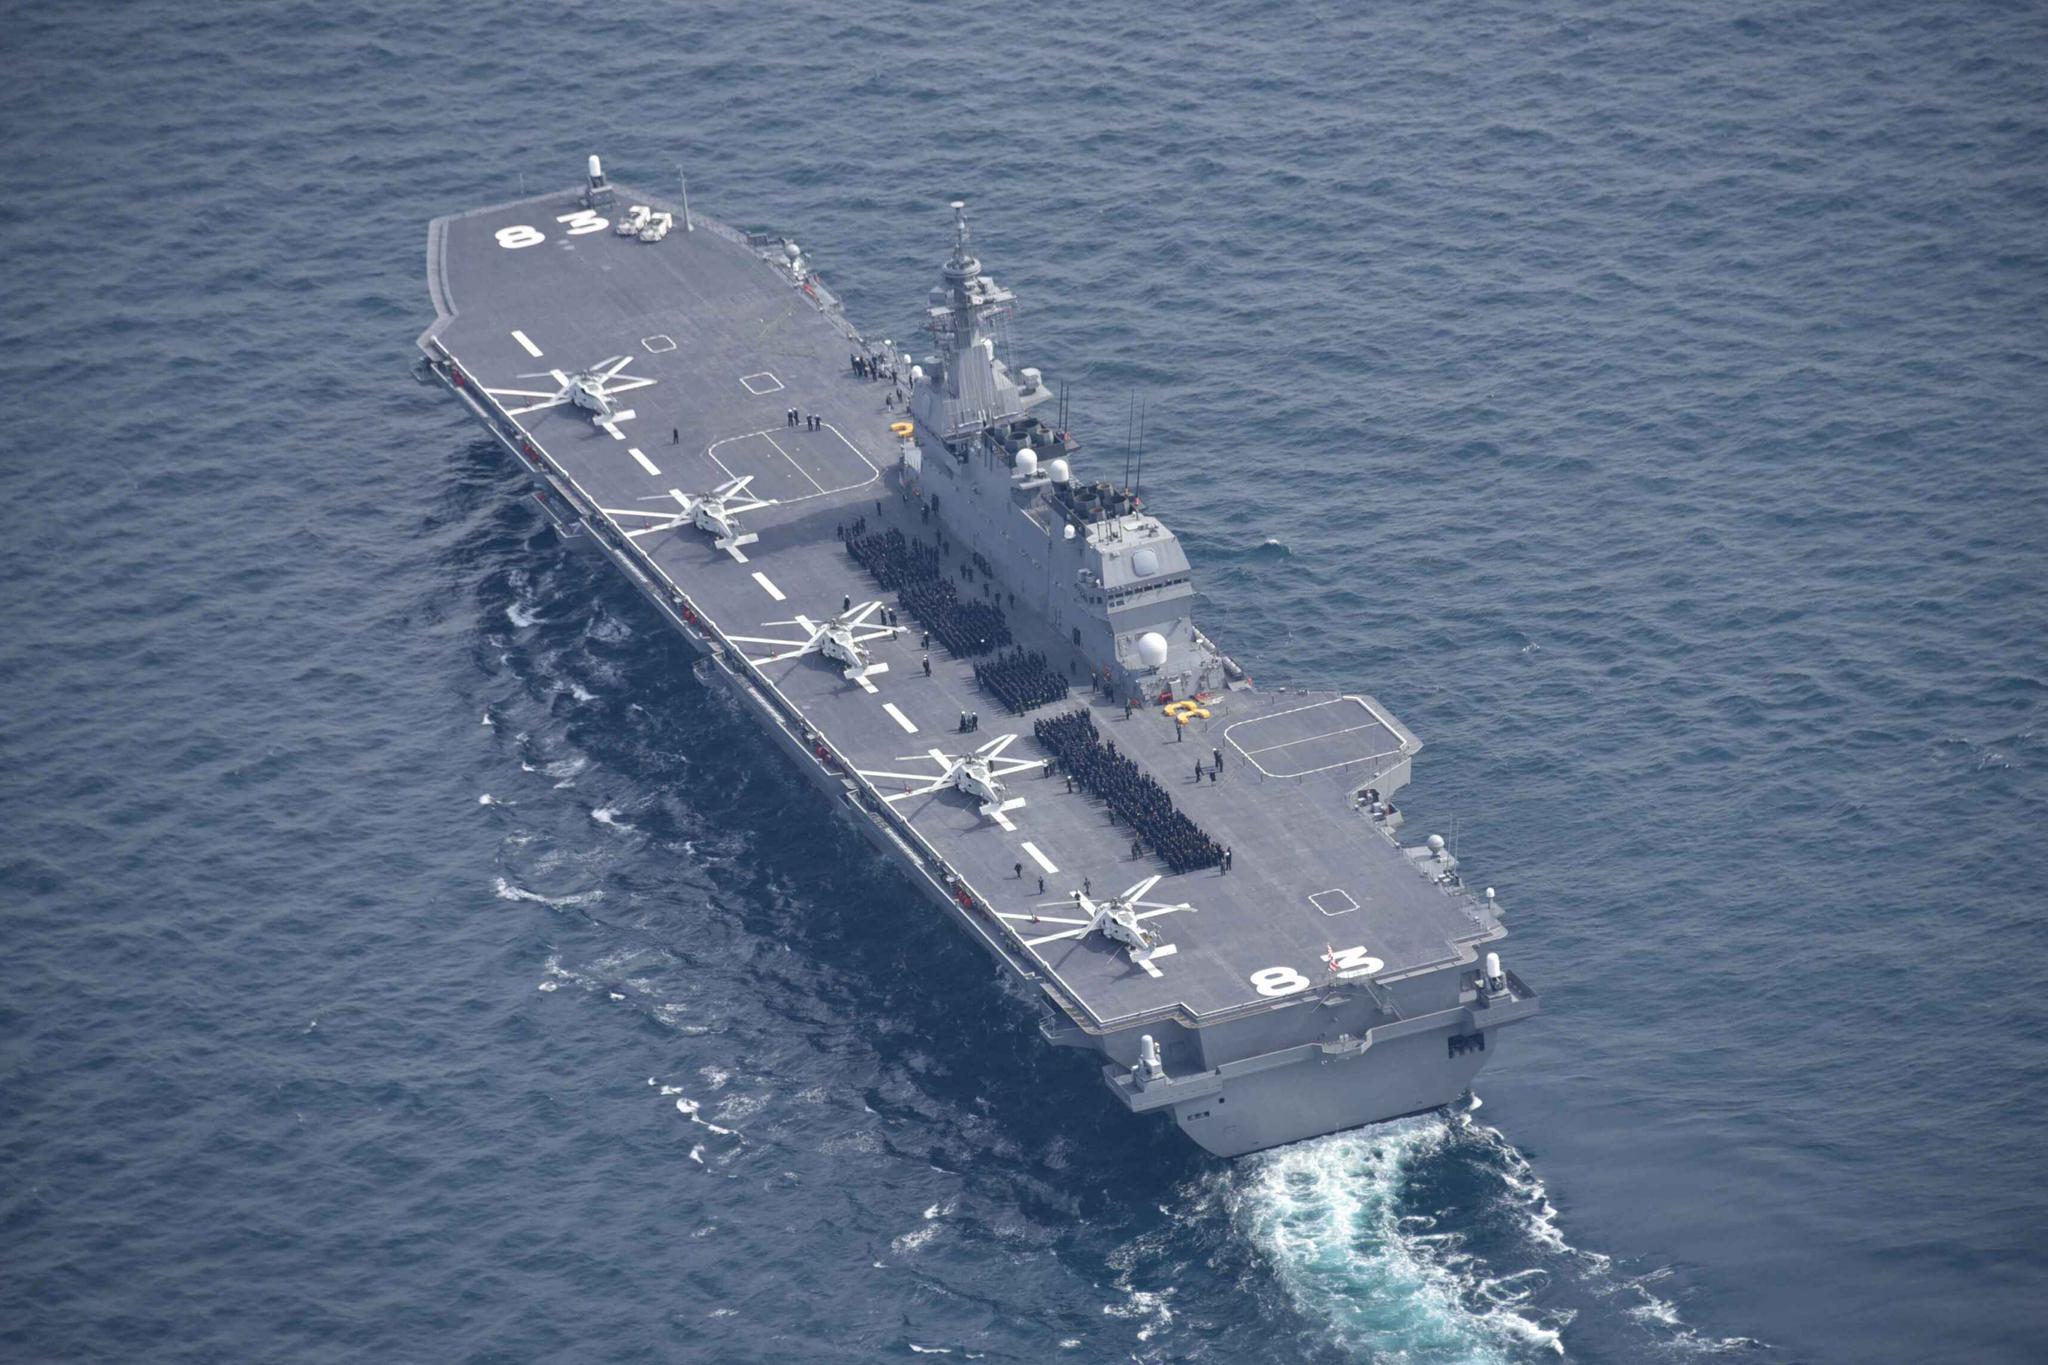 日本海自出云号直升机驱逐舰海外部署三个月后返回横须贺